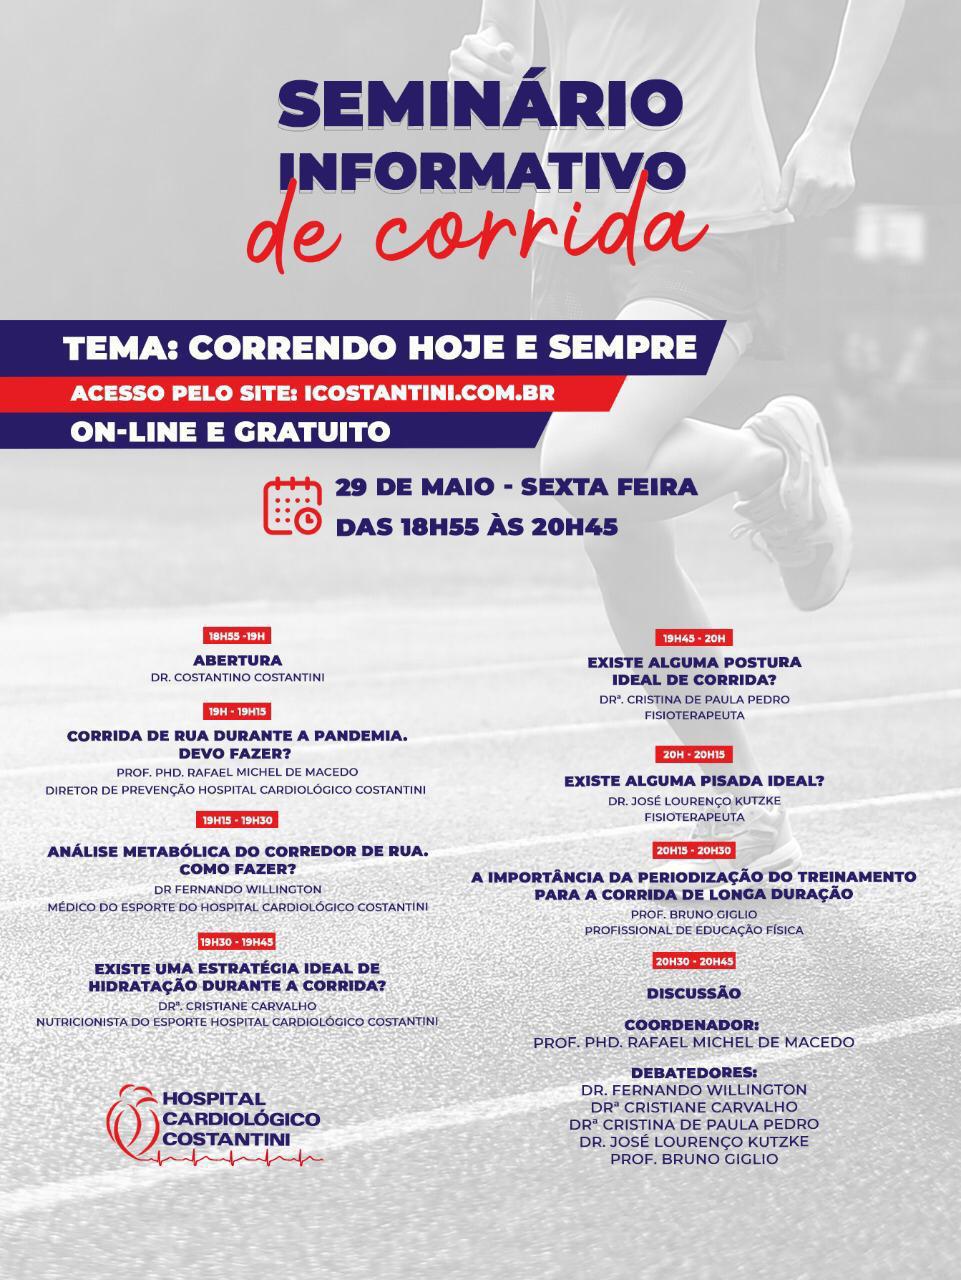 Agenda: Hospital Cardiológico Costantini realiza evento gratuito e on-line sobre Corrida de Rua